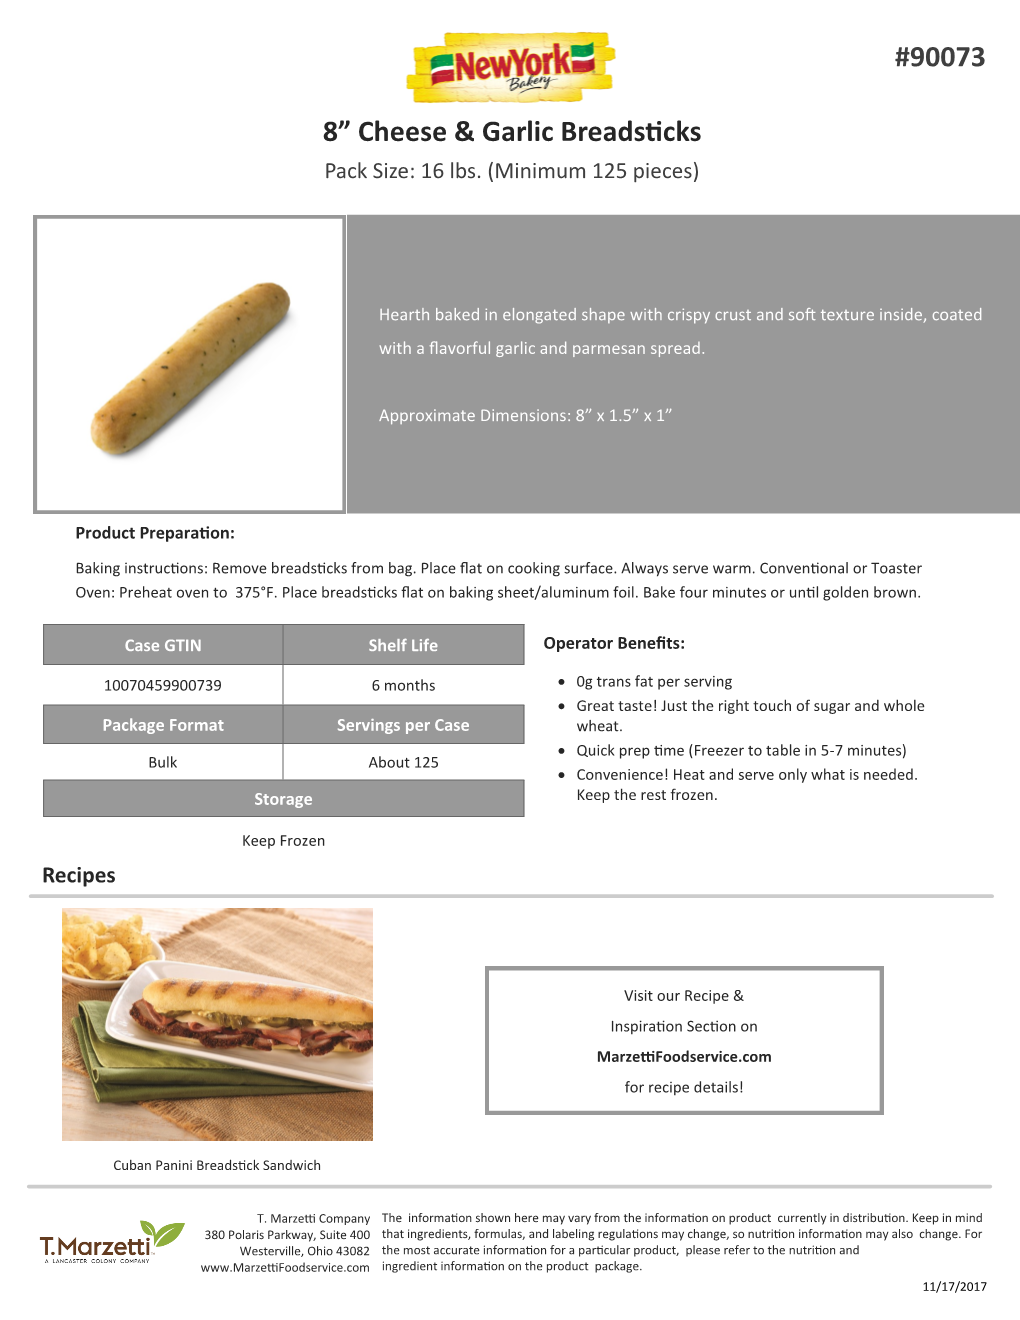 8” Cheese & Garlic Breadsticks #90073